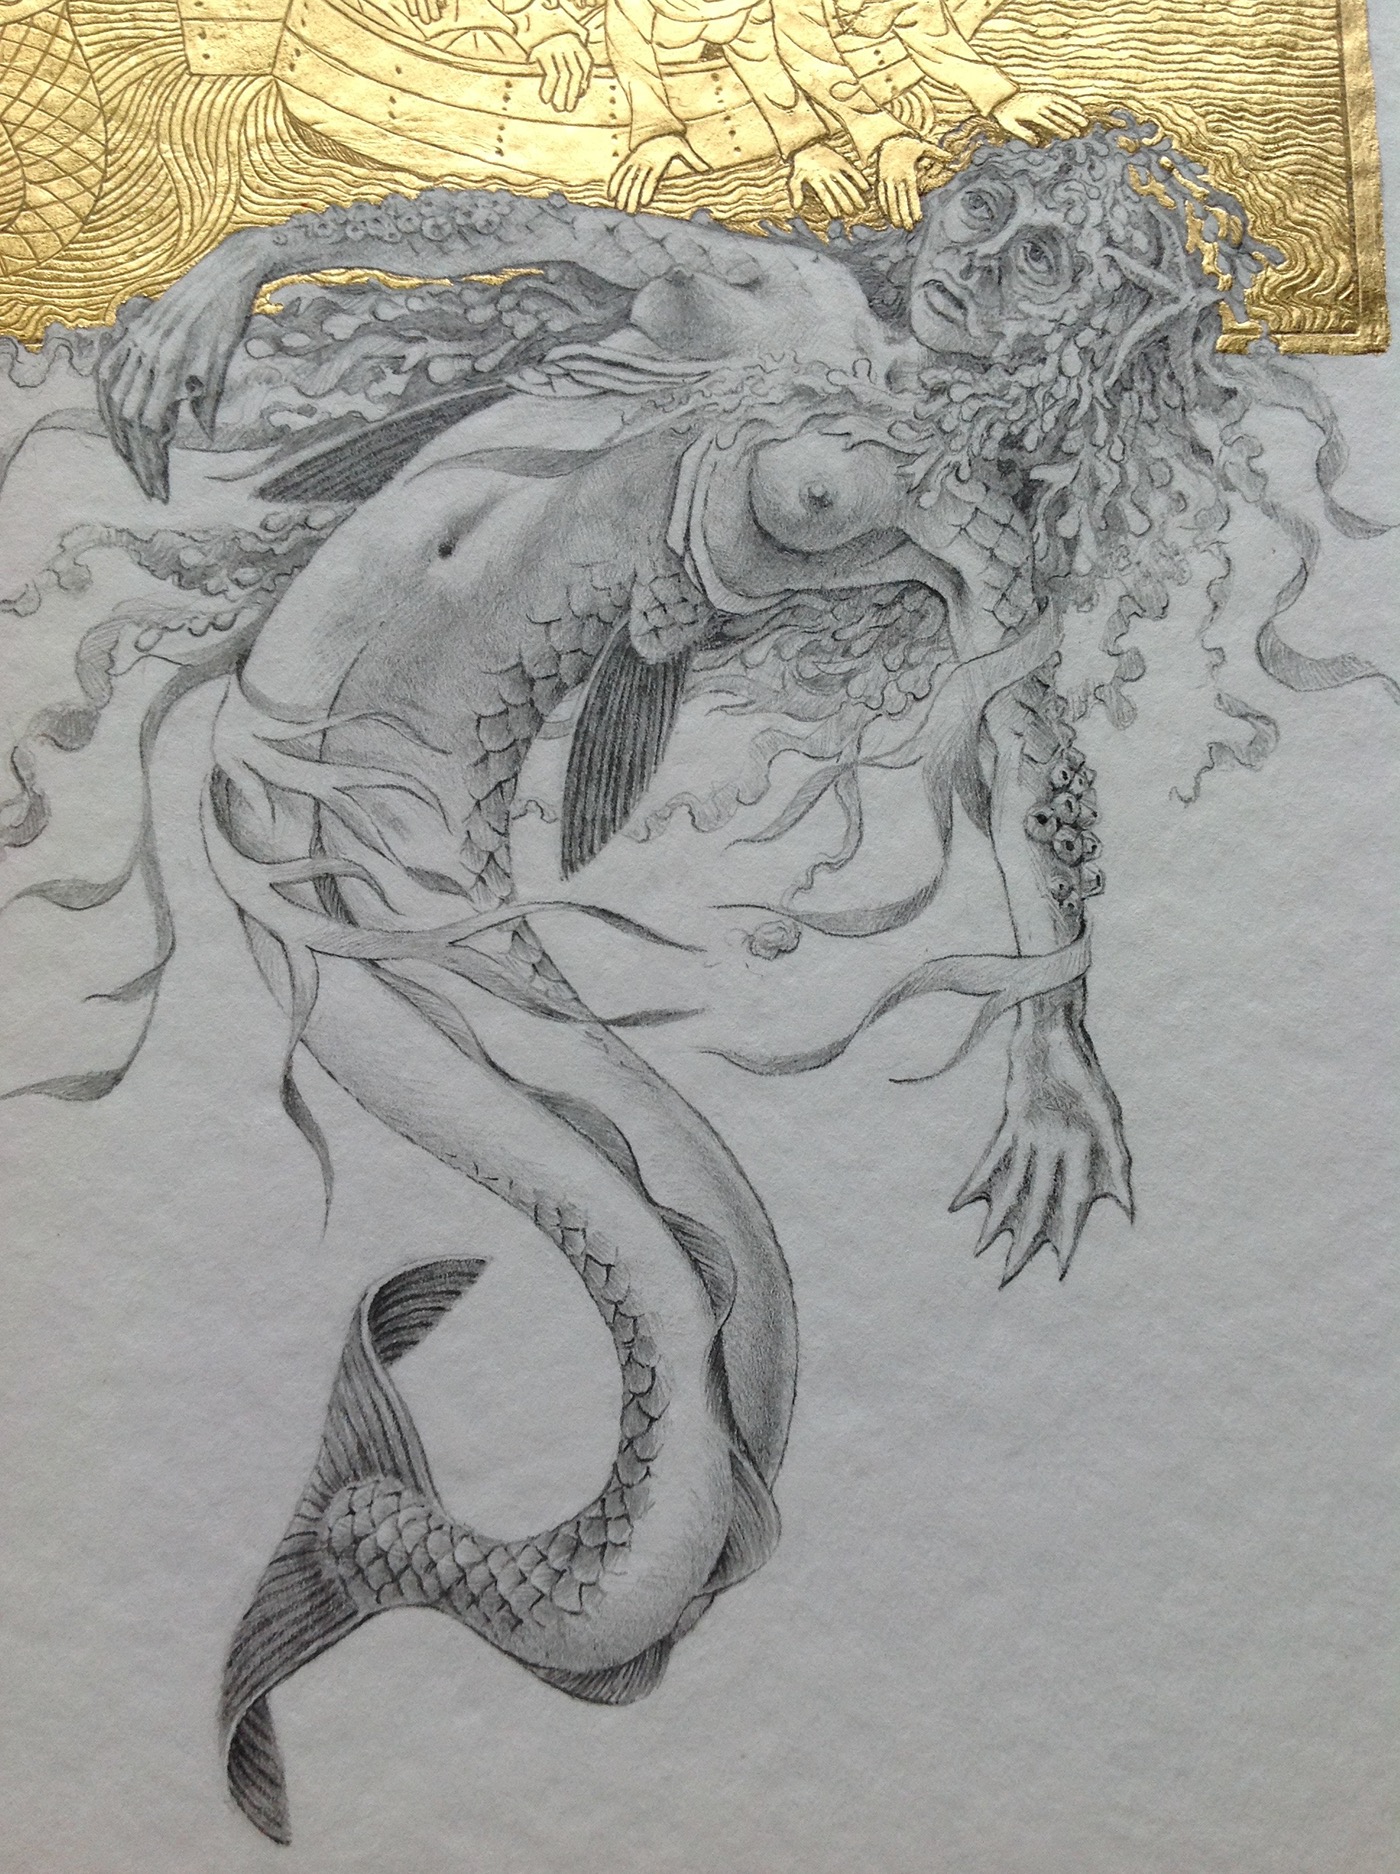 Bestiary monsters mythology middle ages book ILLUSTRATION  pencilart goldleaf greekmythology pencildrawing